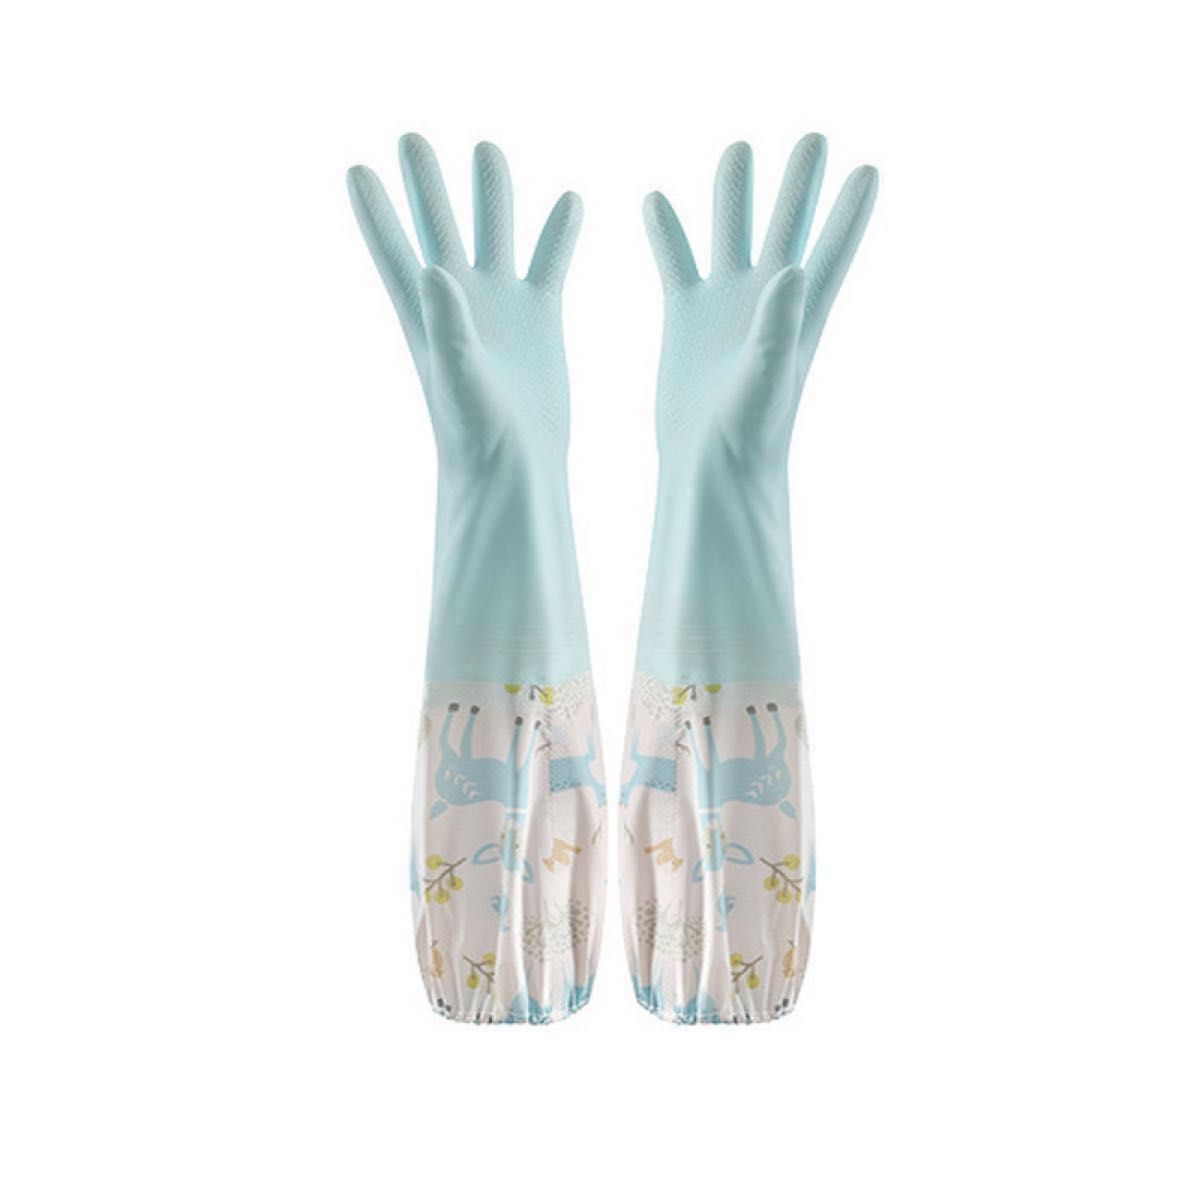 ゴム手袋 Ｓサイズ 3色セット 裏地なし キッチングローブ 袖付き 掃除 手袋 ロンググローブ イベント